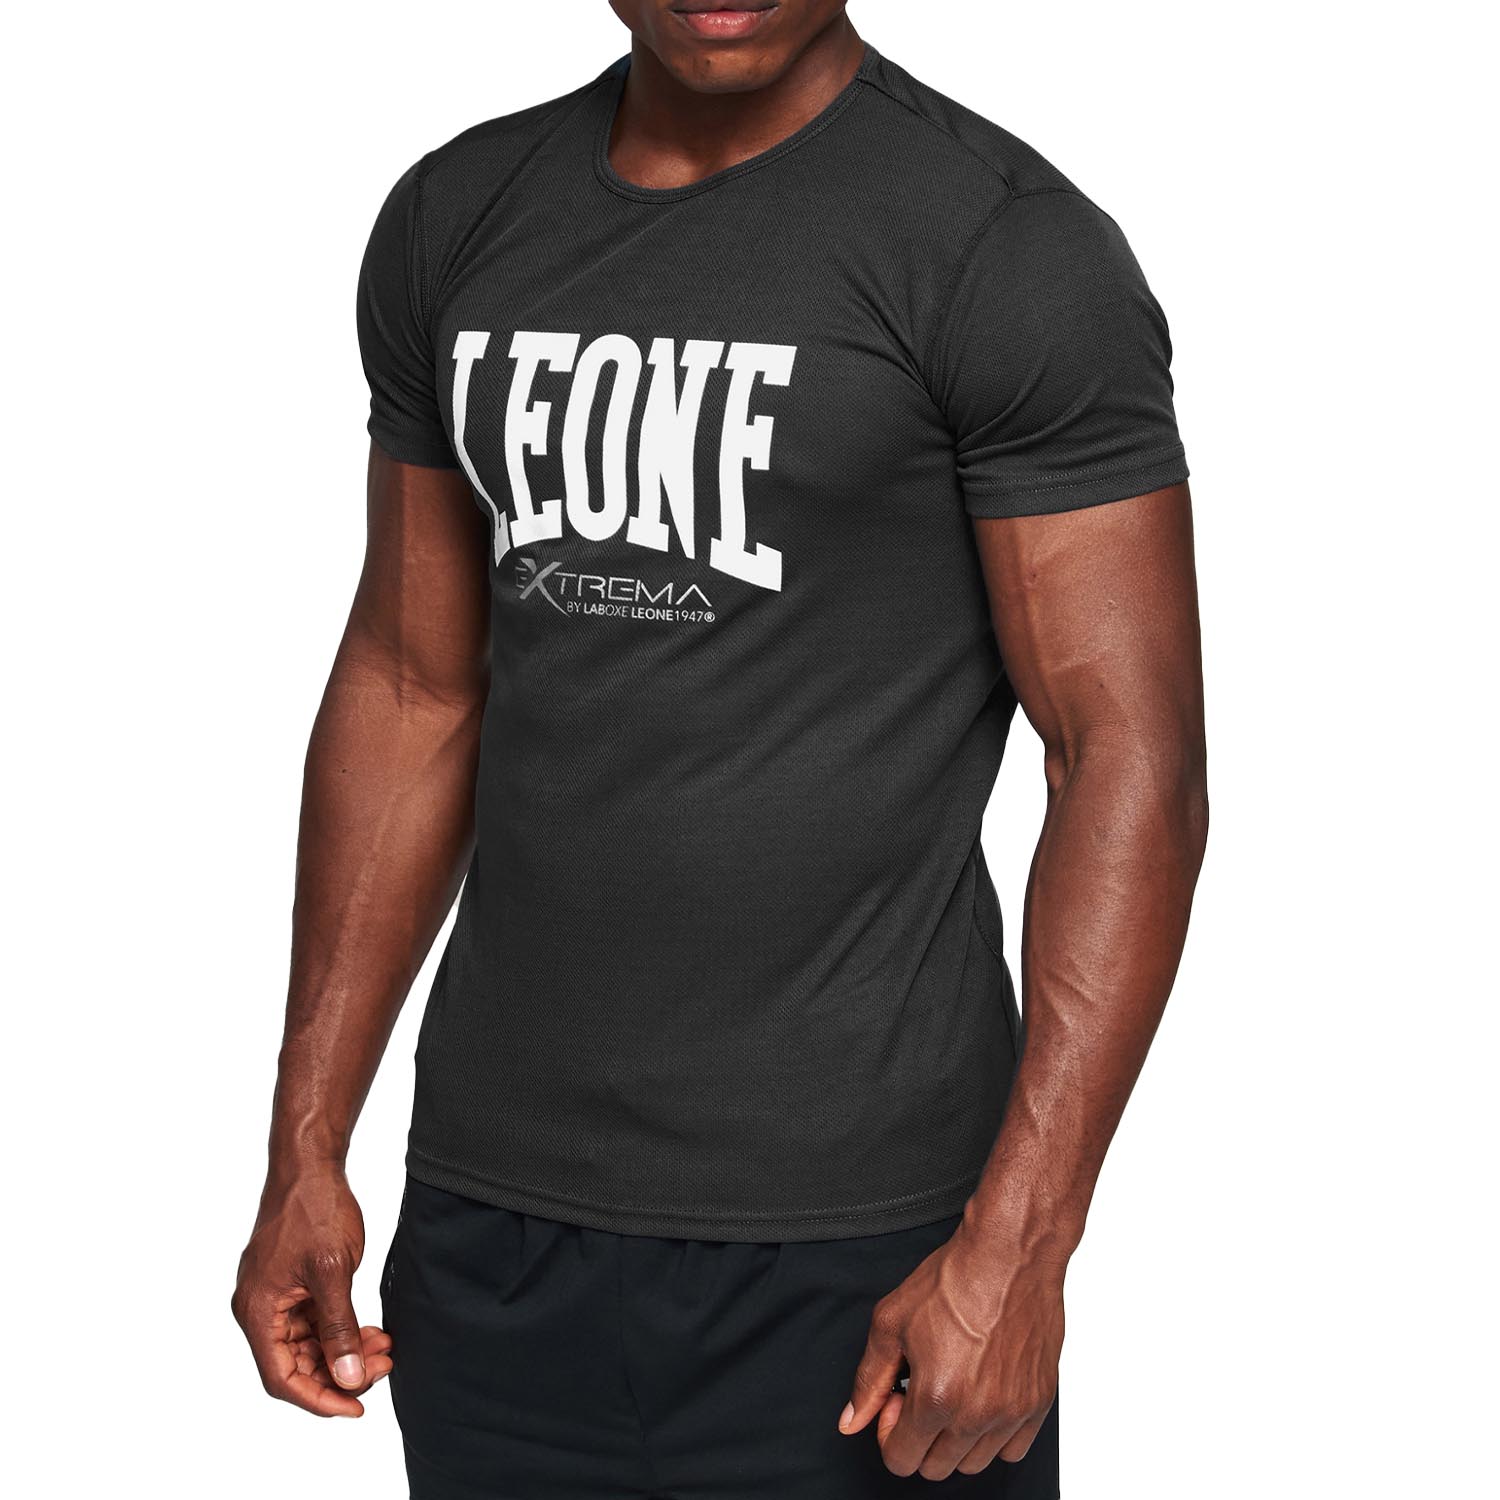 LEONE T-Shirt, Logo, ABX106, schwarz